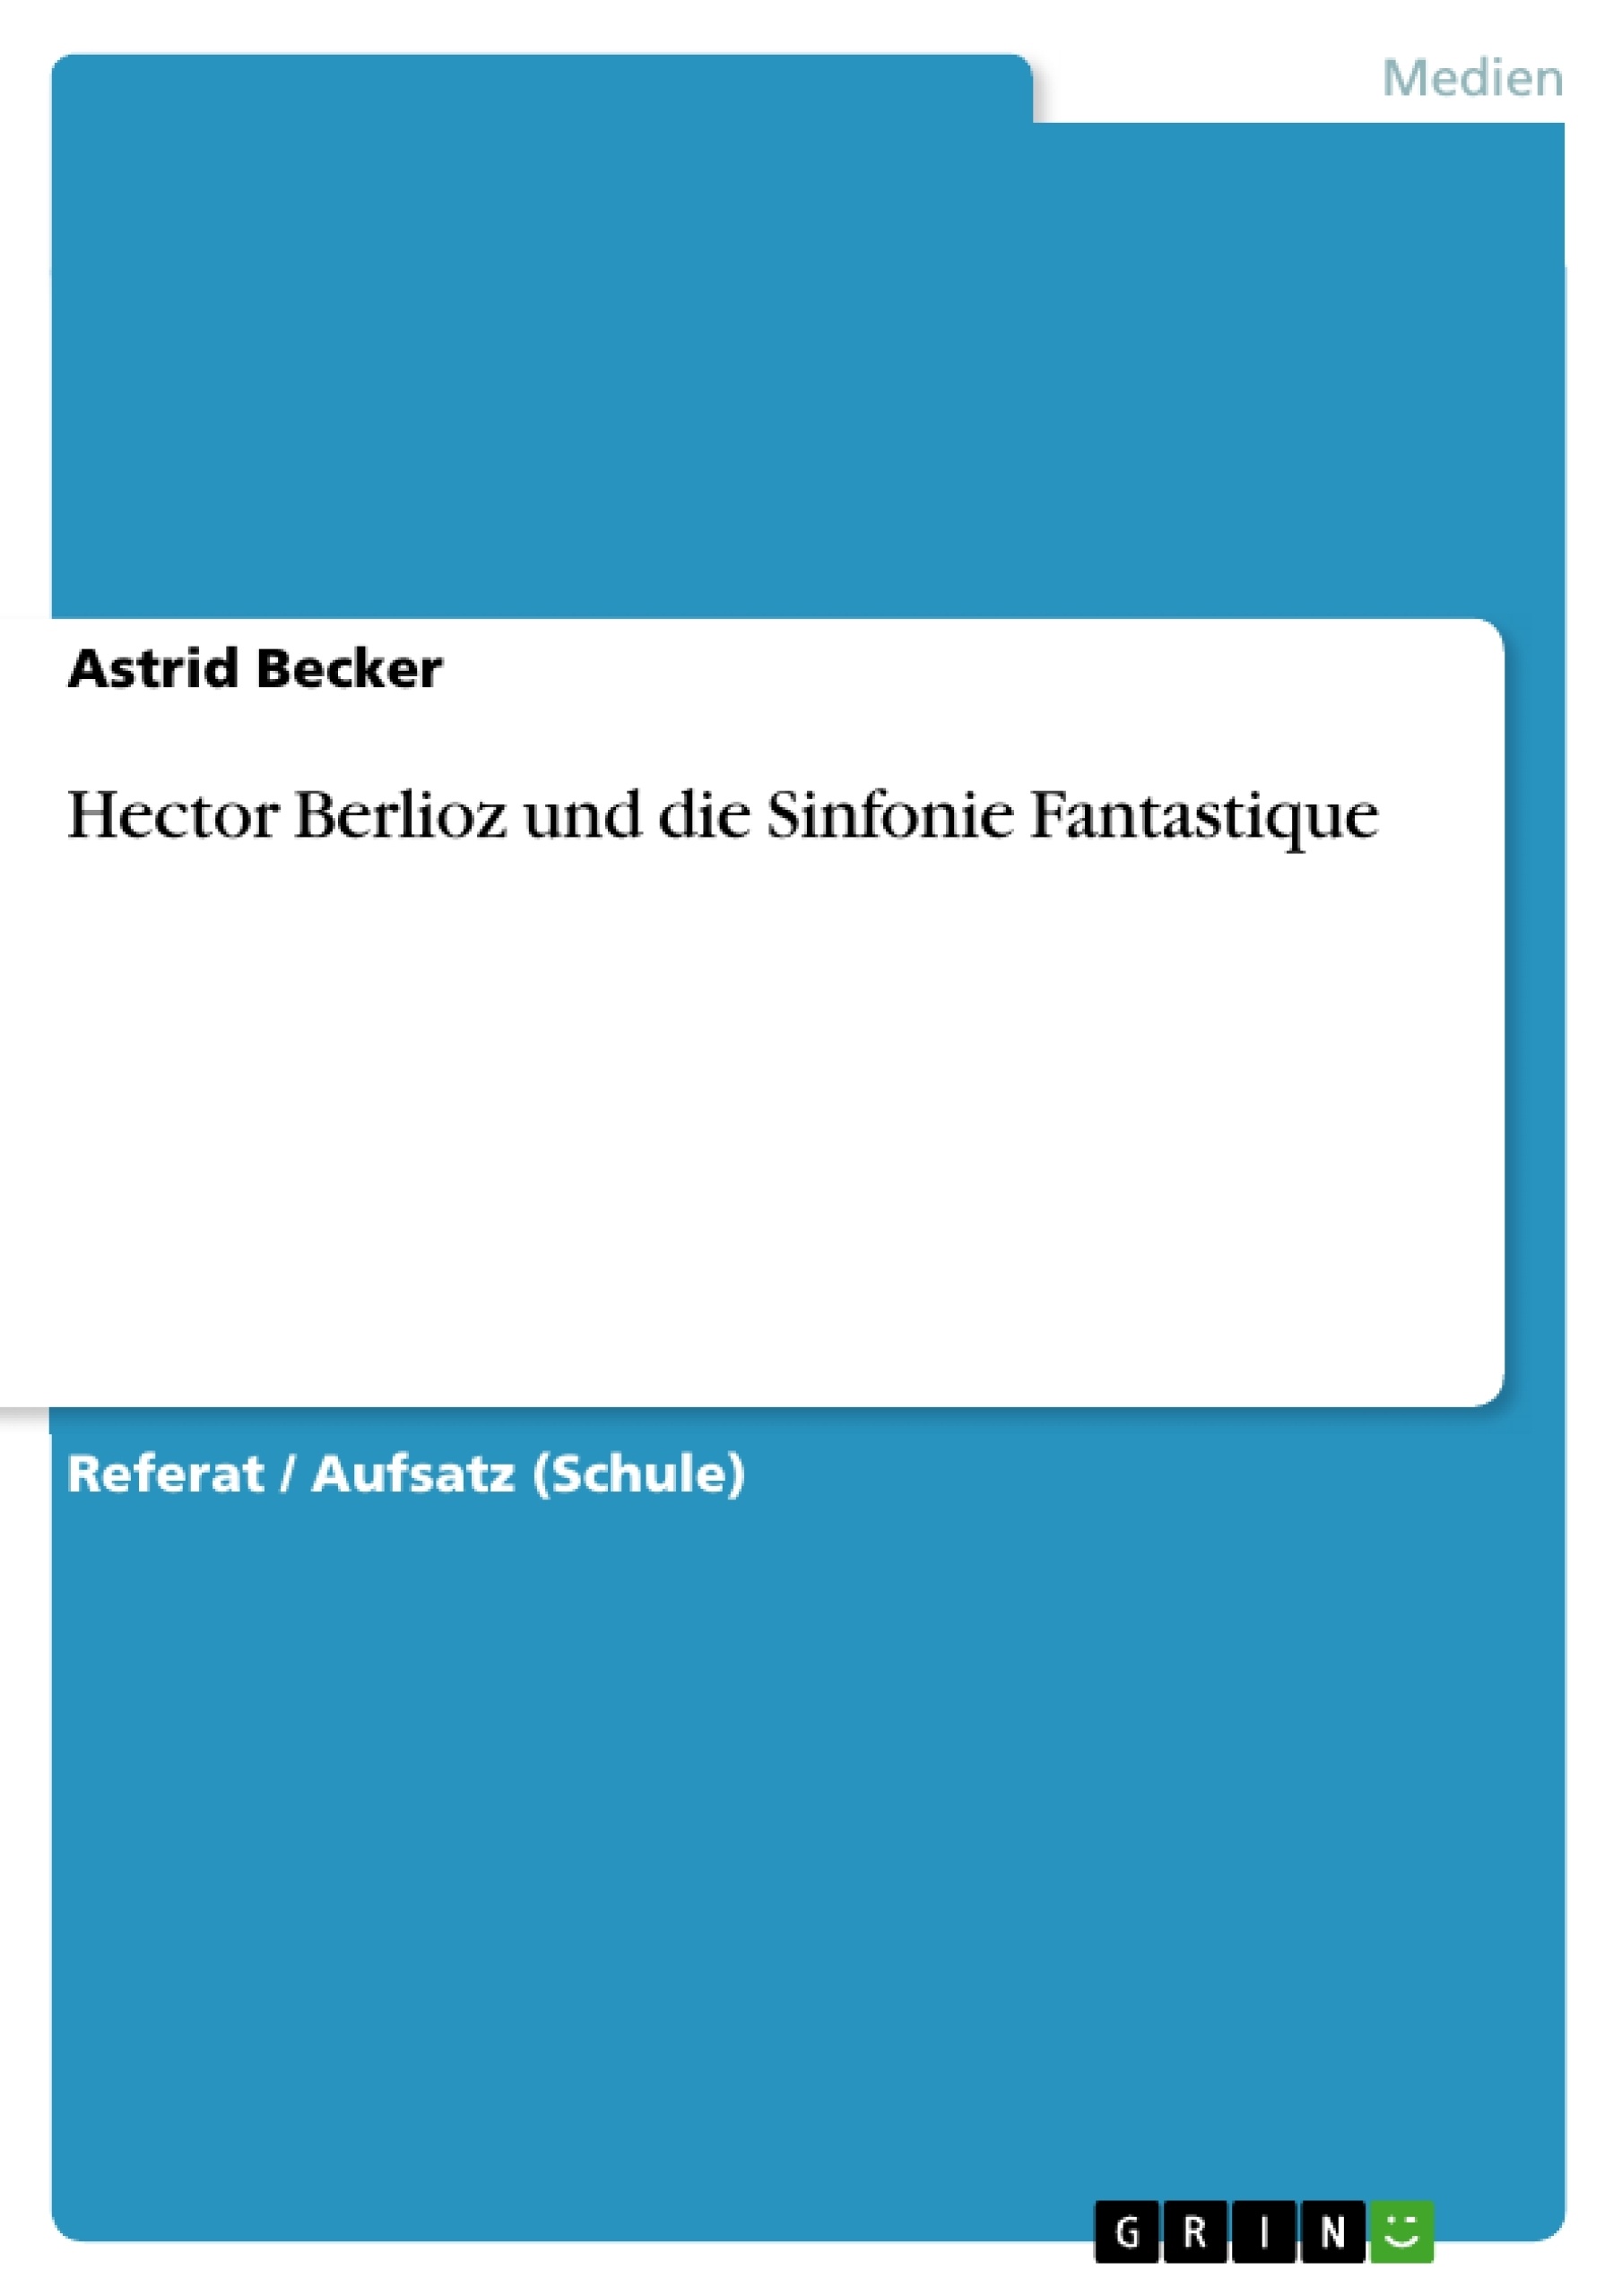 Title: Hector Berlioz und die Sinfonie Fantastique